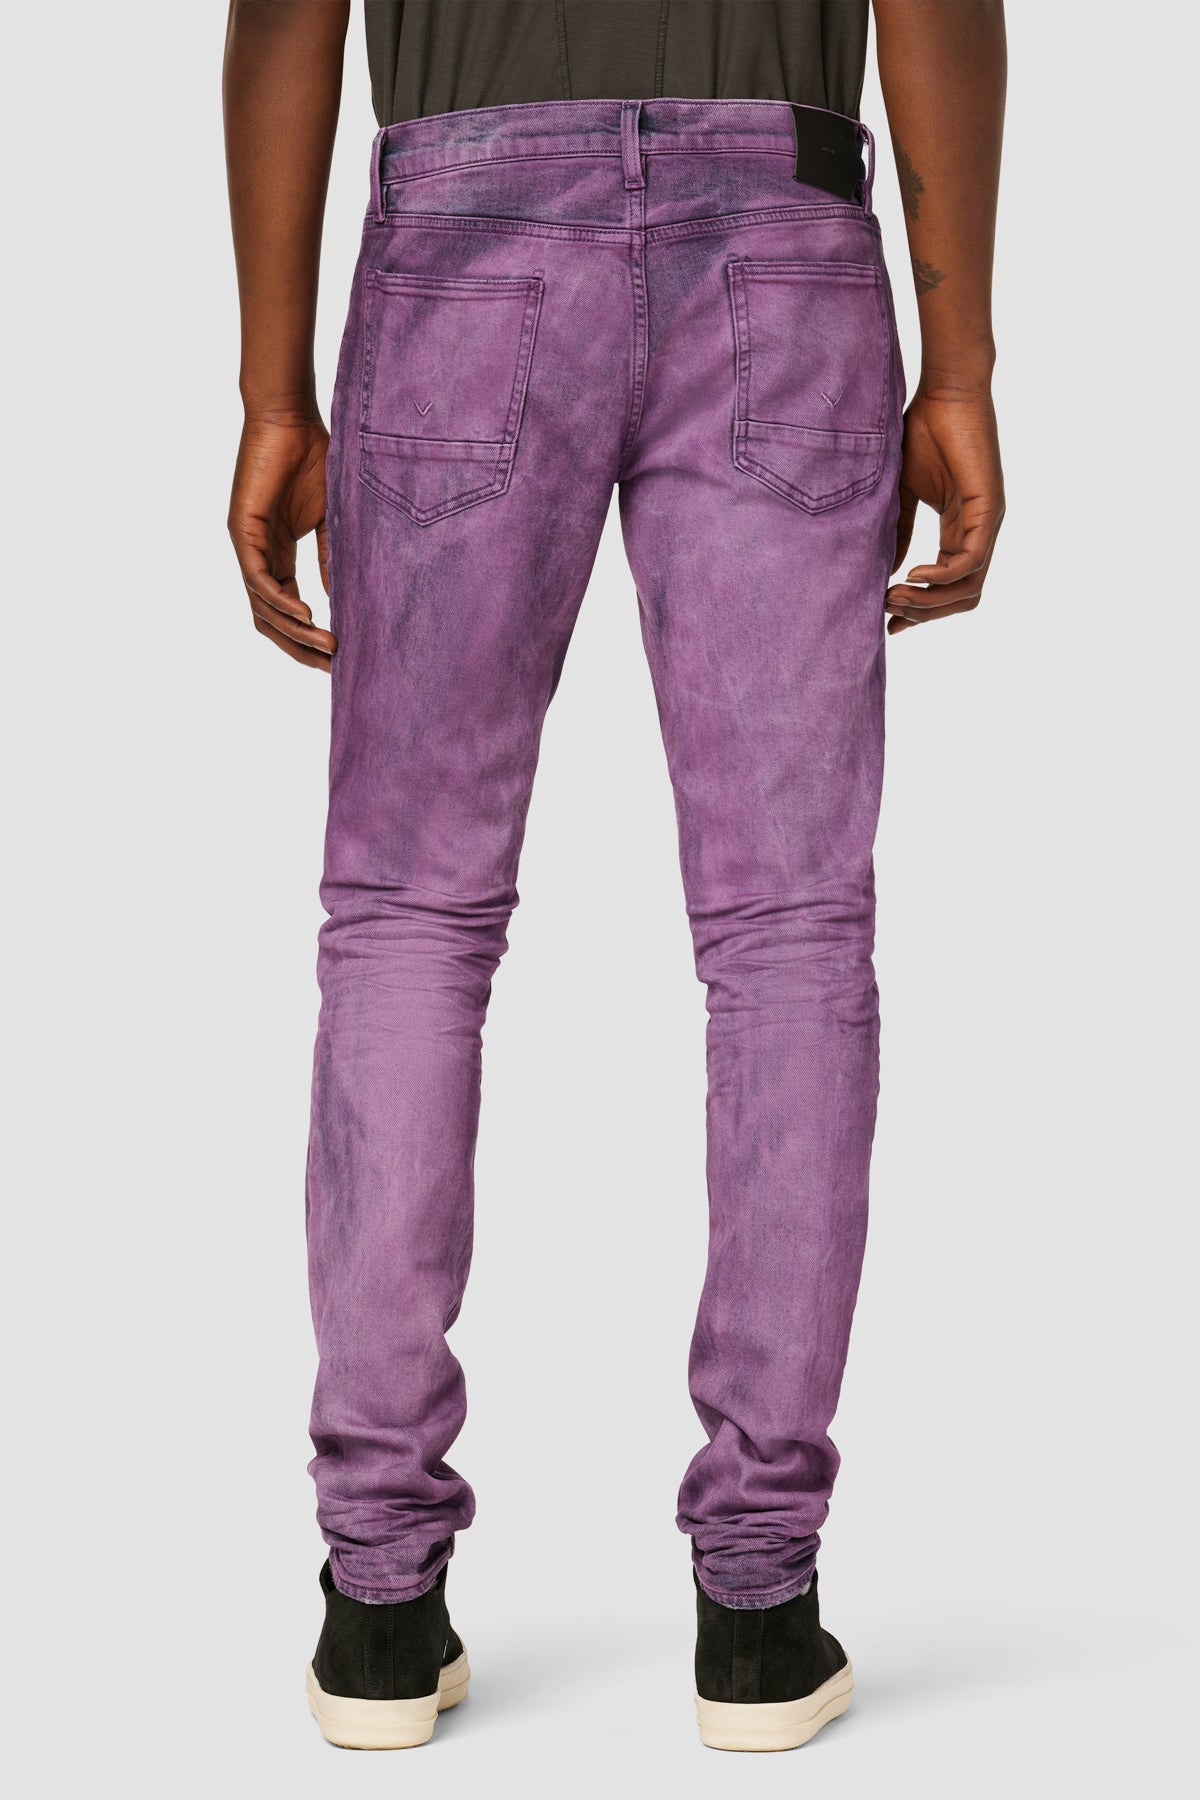 Slim jean Purple brand Multicolour size 34 US in Cotton